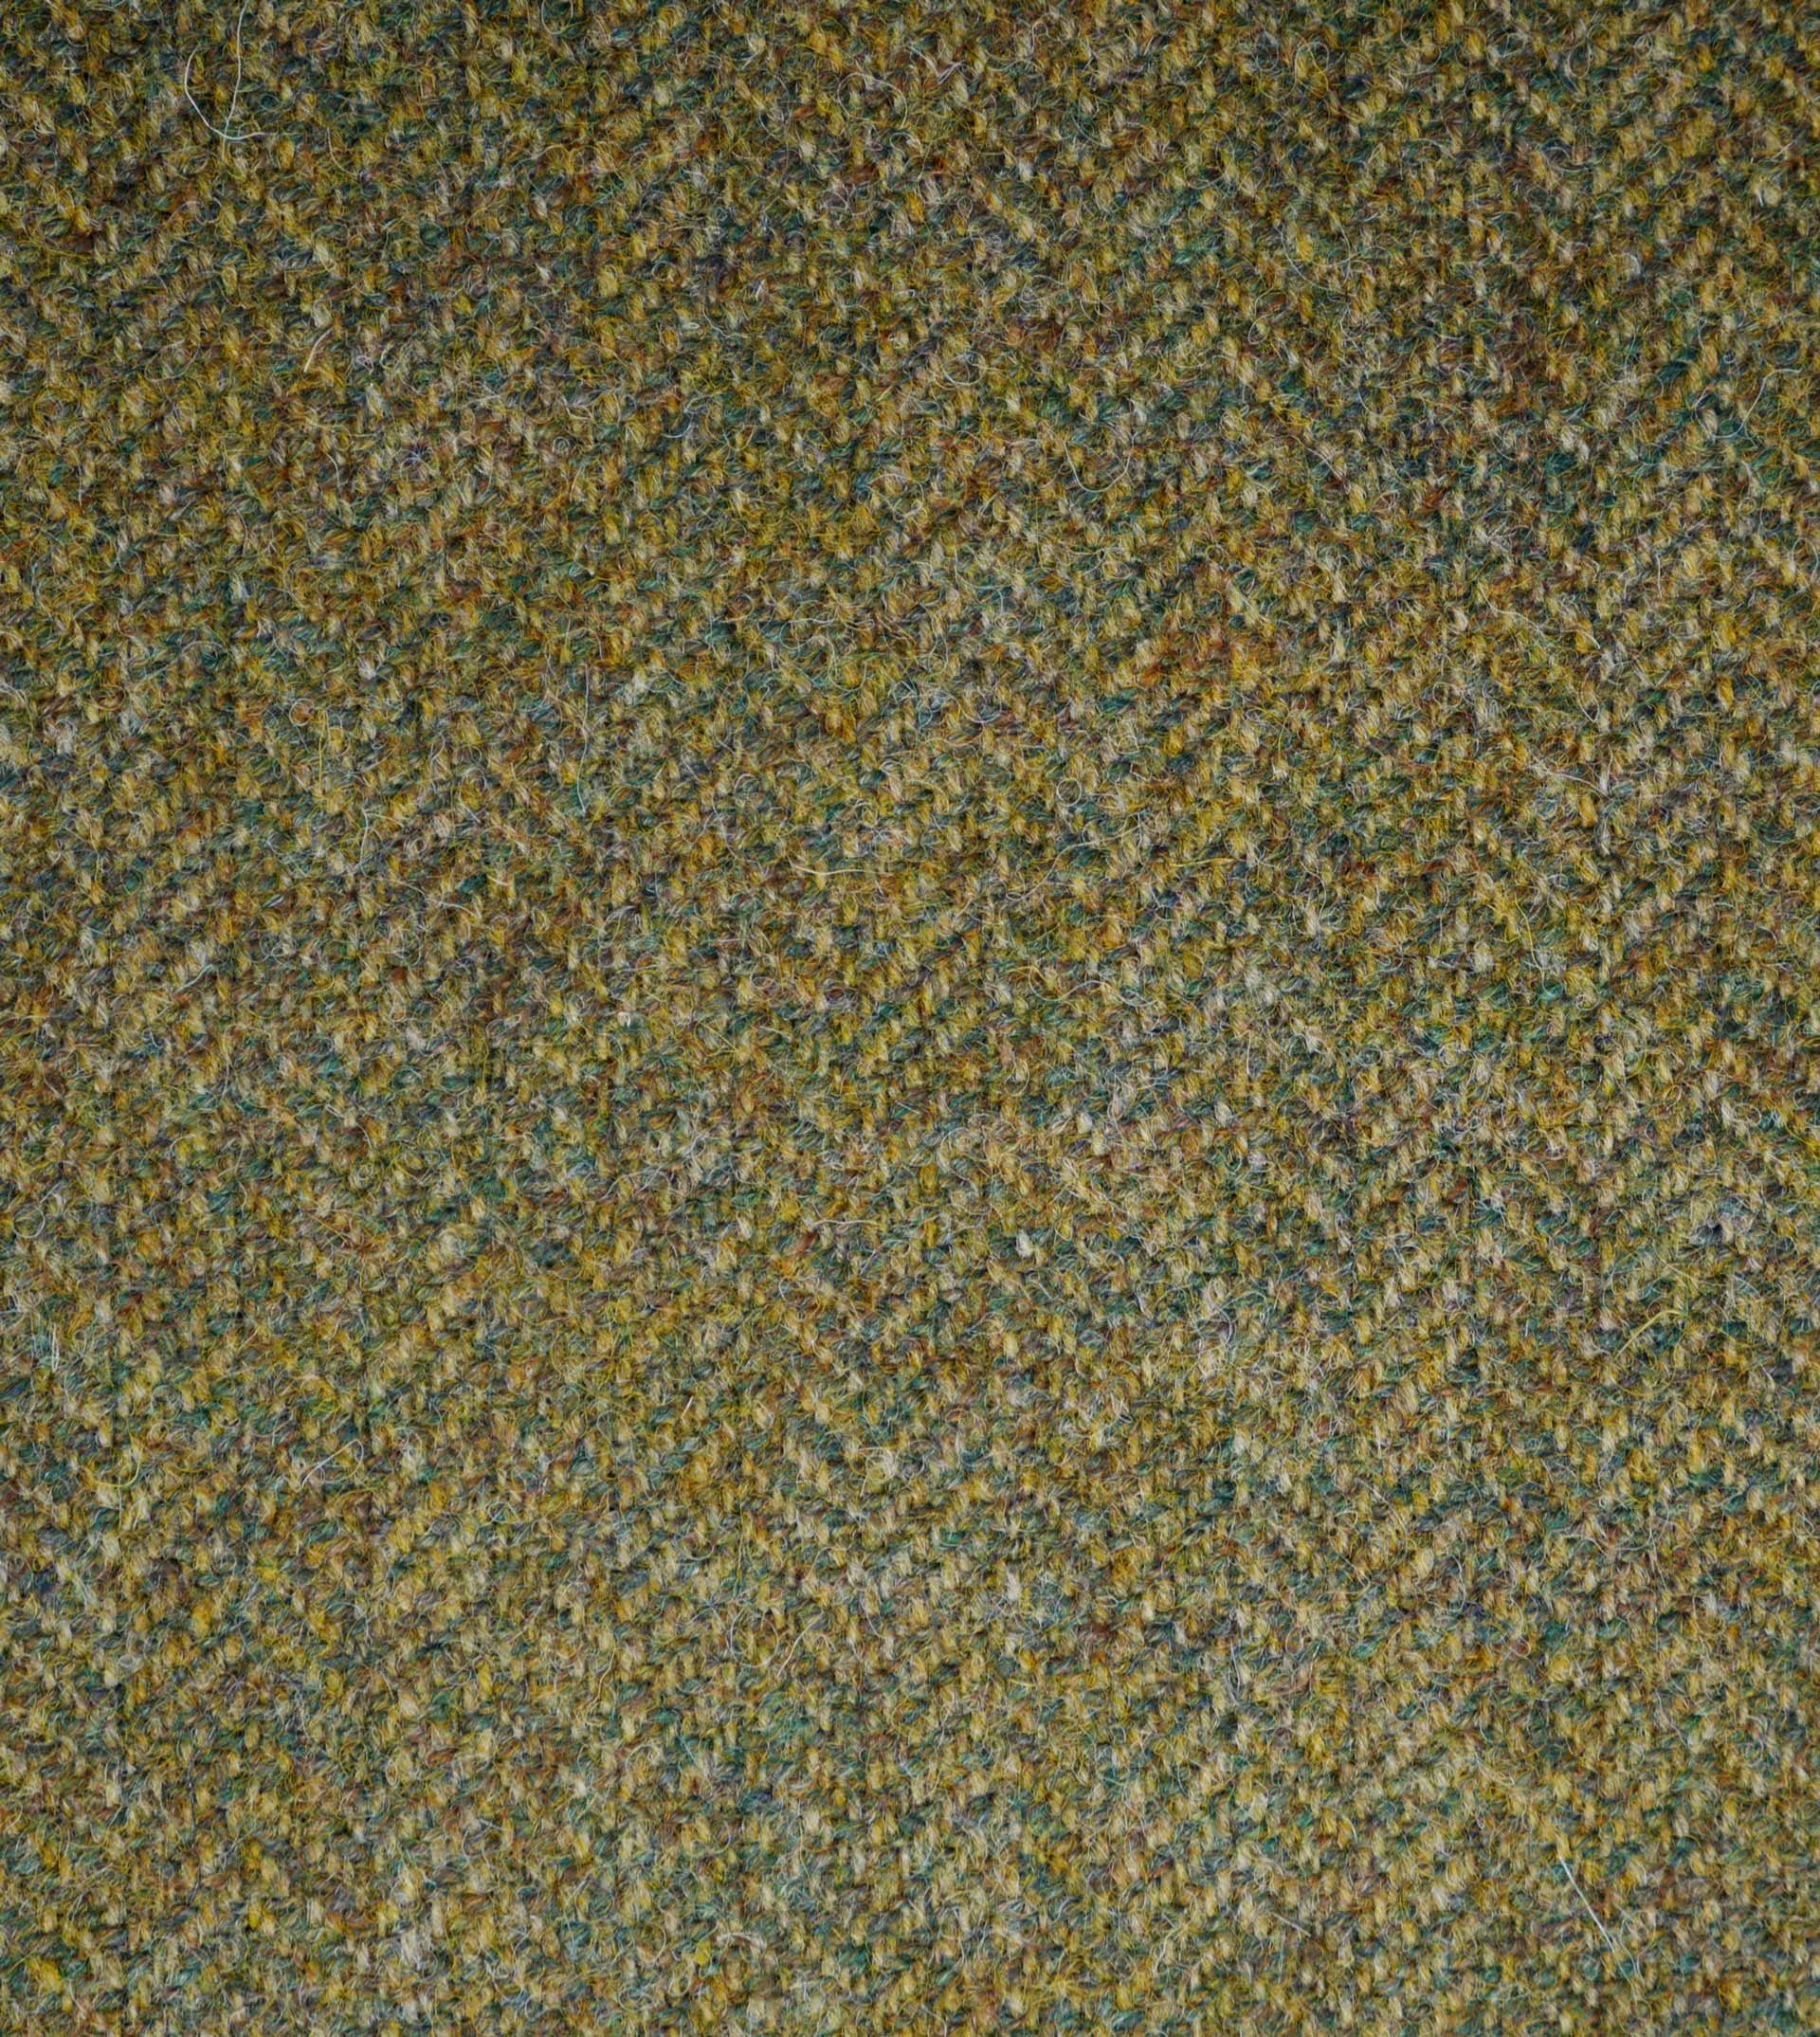 Fabric swatch-herringbone